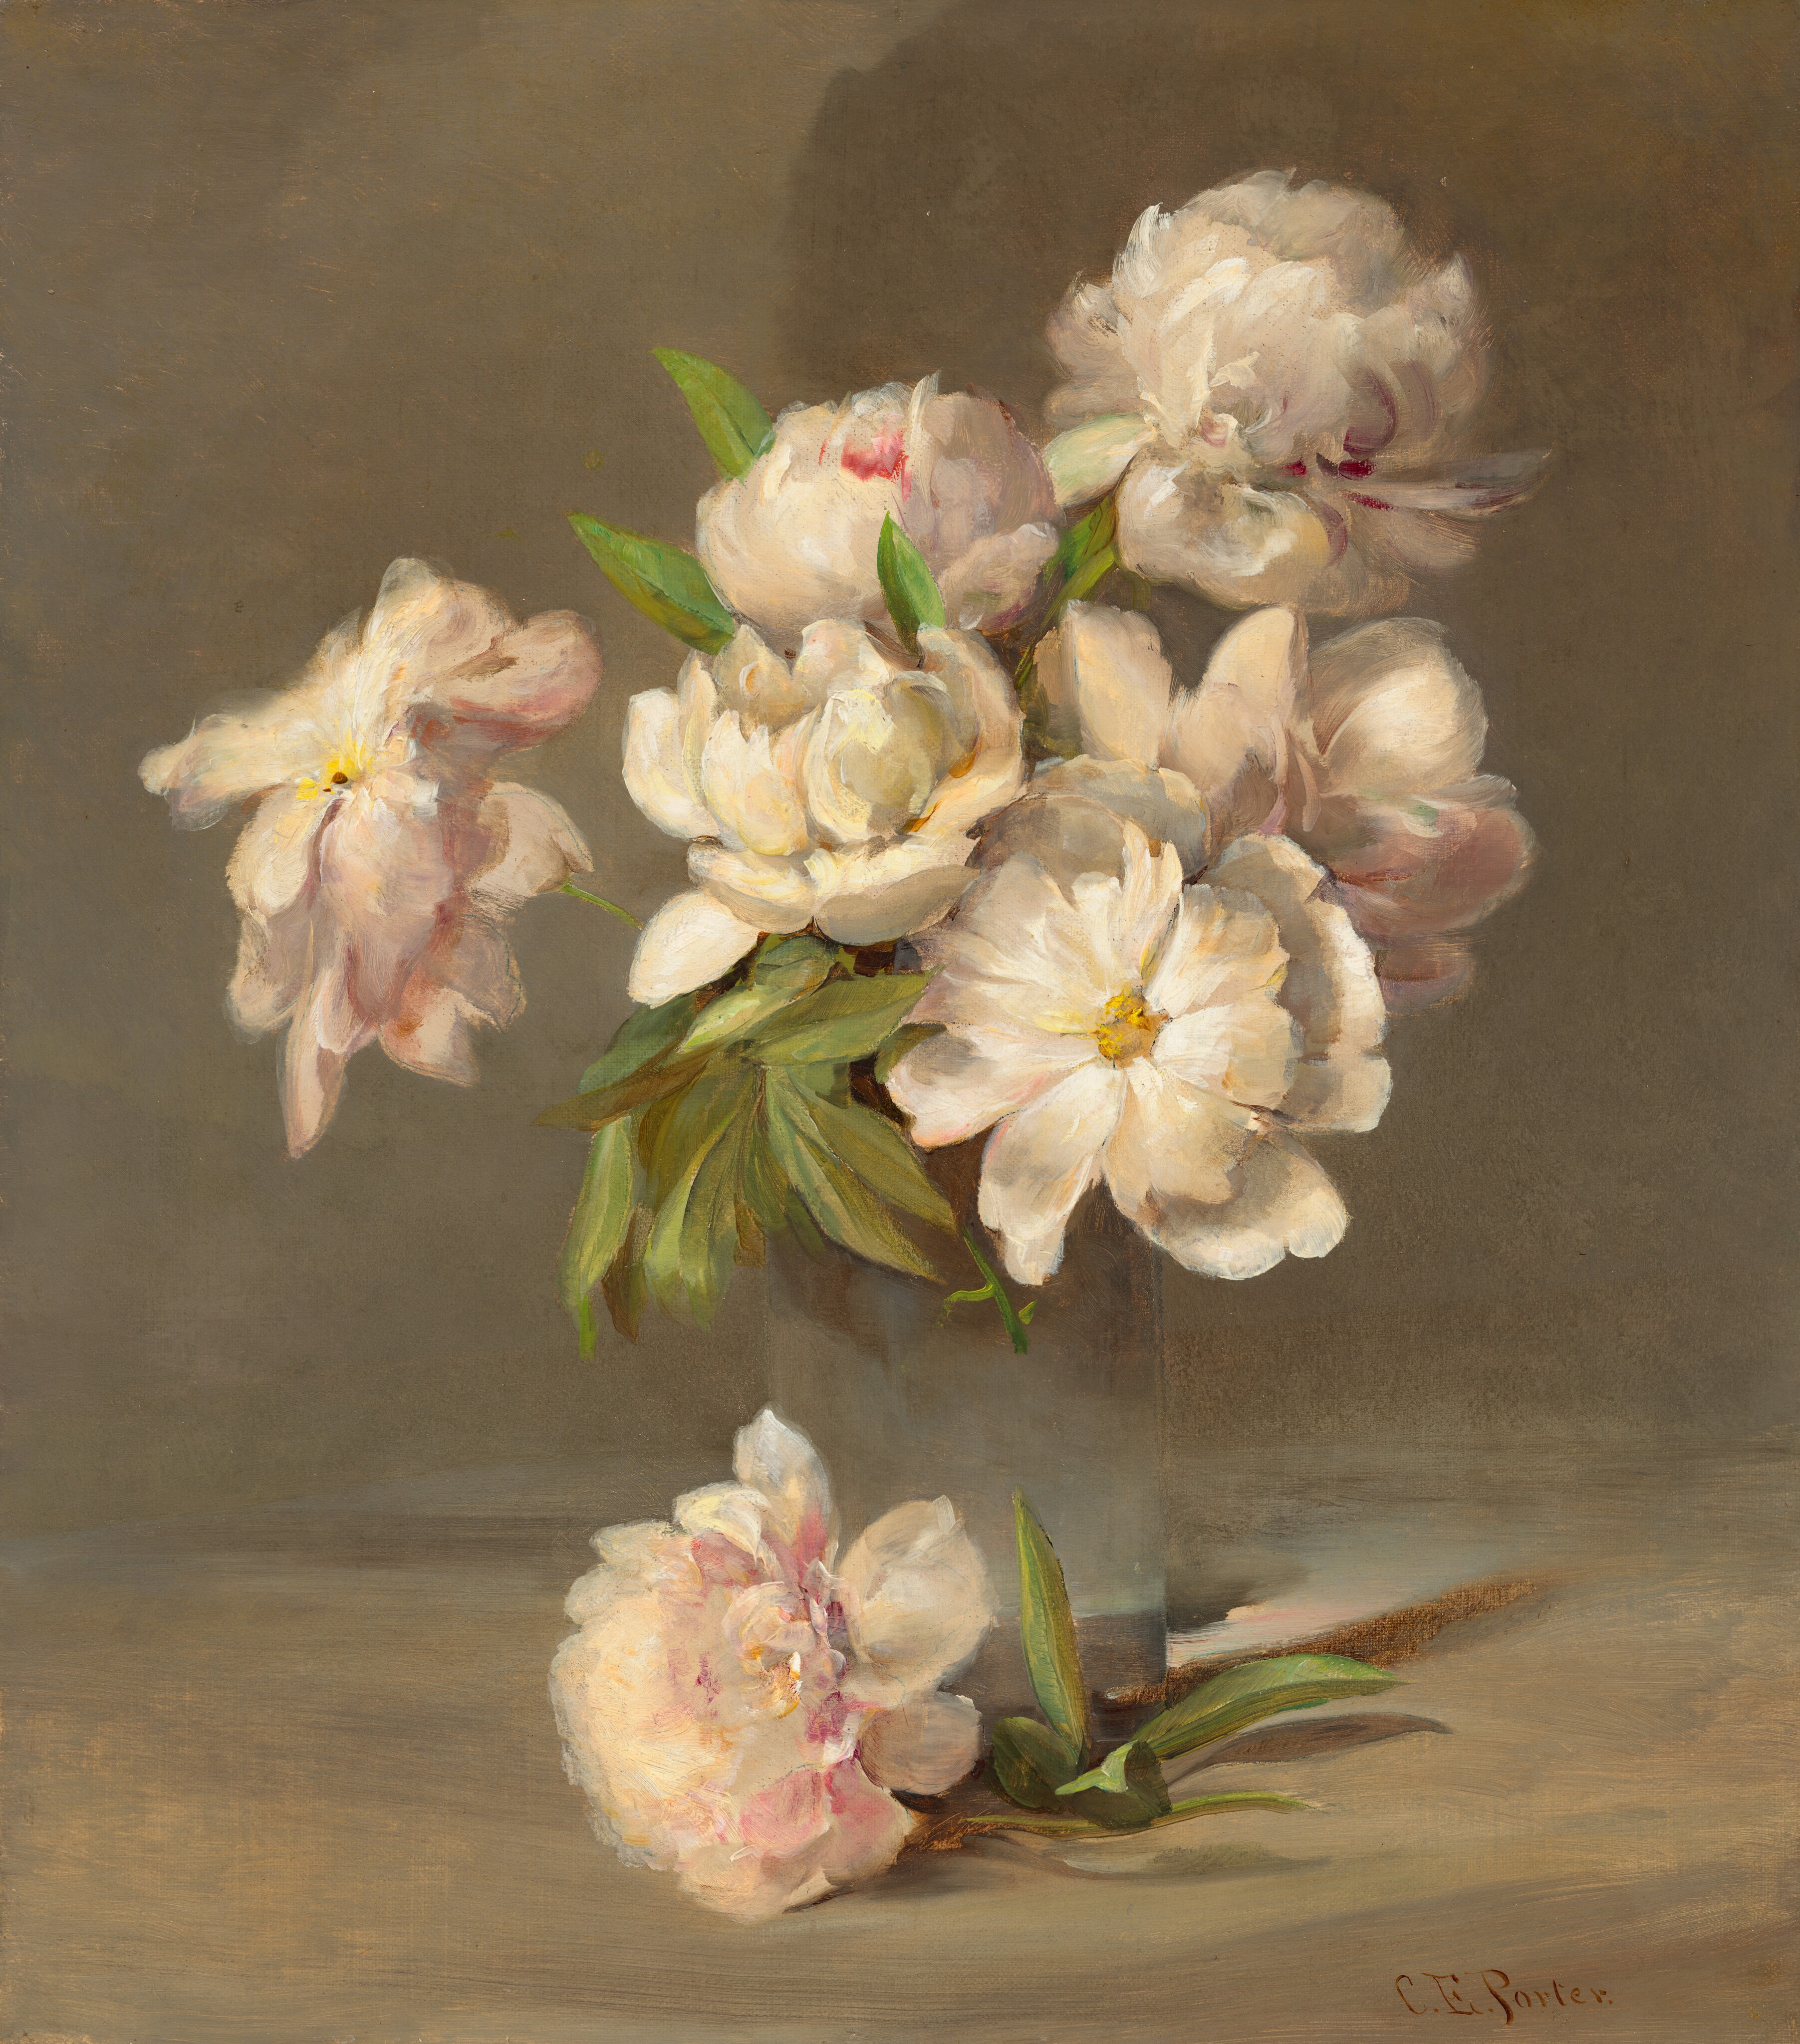 화병에 든 작약(Peonies in a Vase) by Charles Ethan Porter - 1885년경 - 45.72 × 40.64 cm 